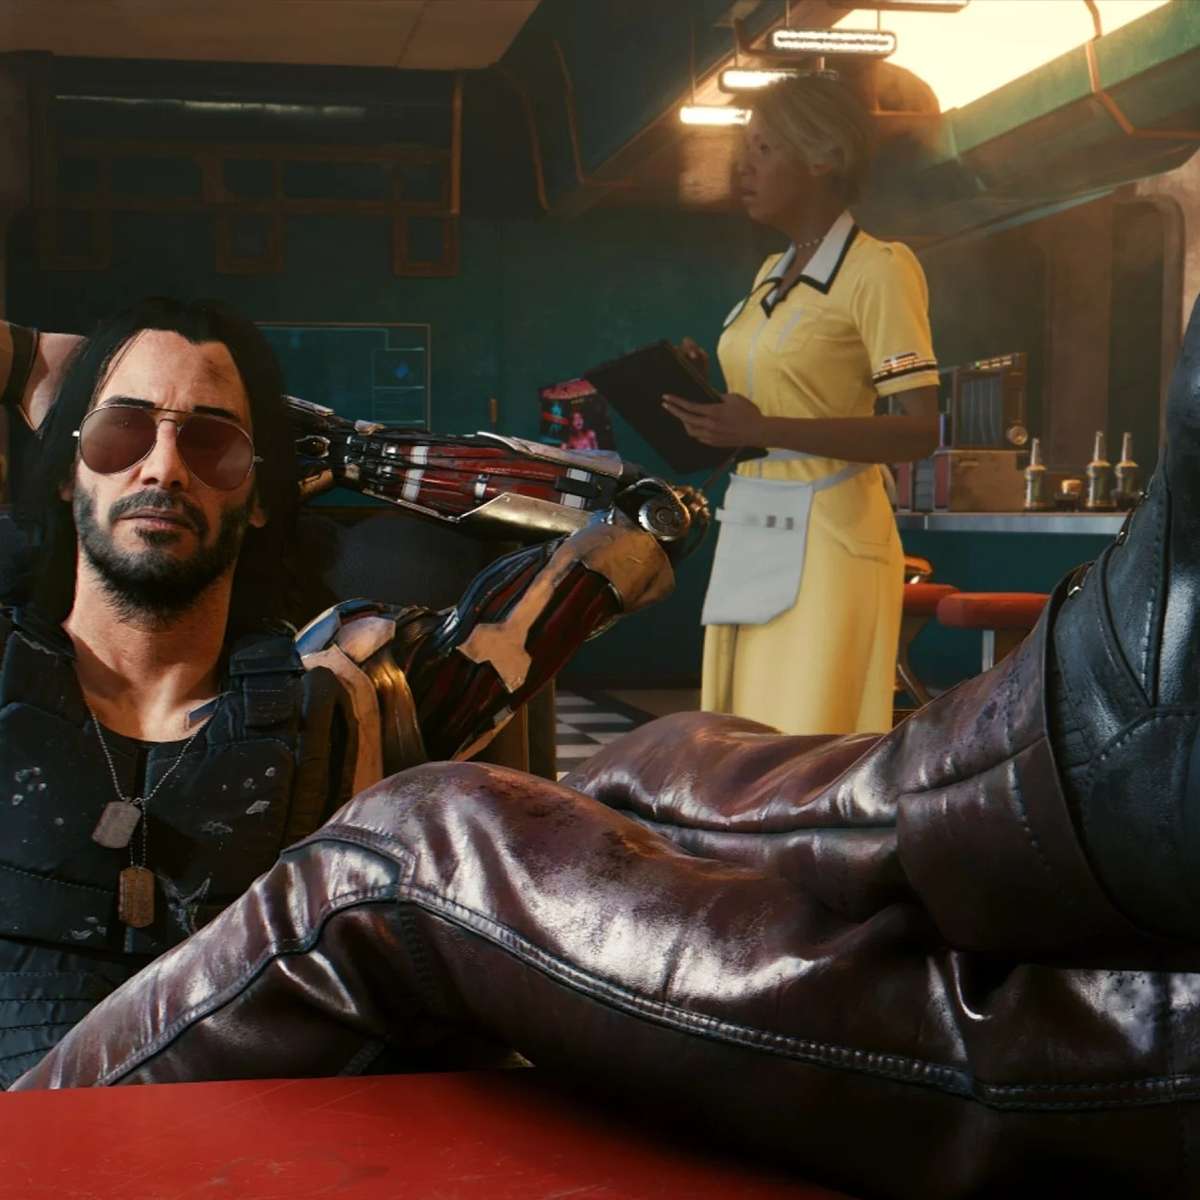 Patch 1.3 de Cyberpunk 2077 traz novo visual para personagem de Keanu  Reeves – Tecnoblog